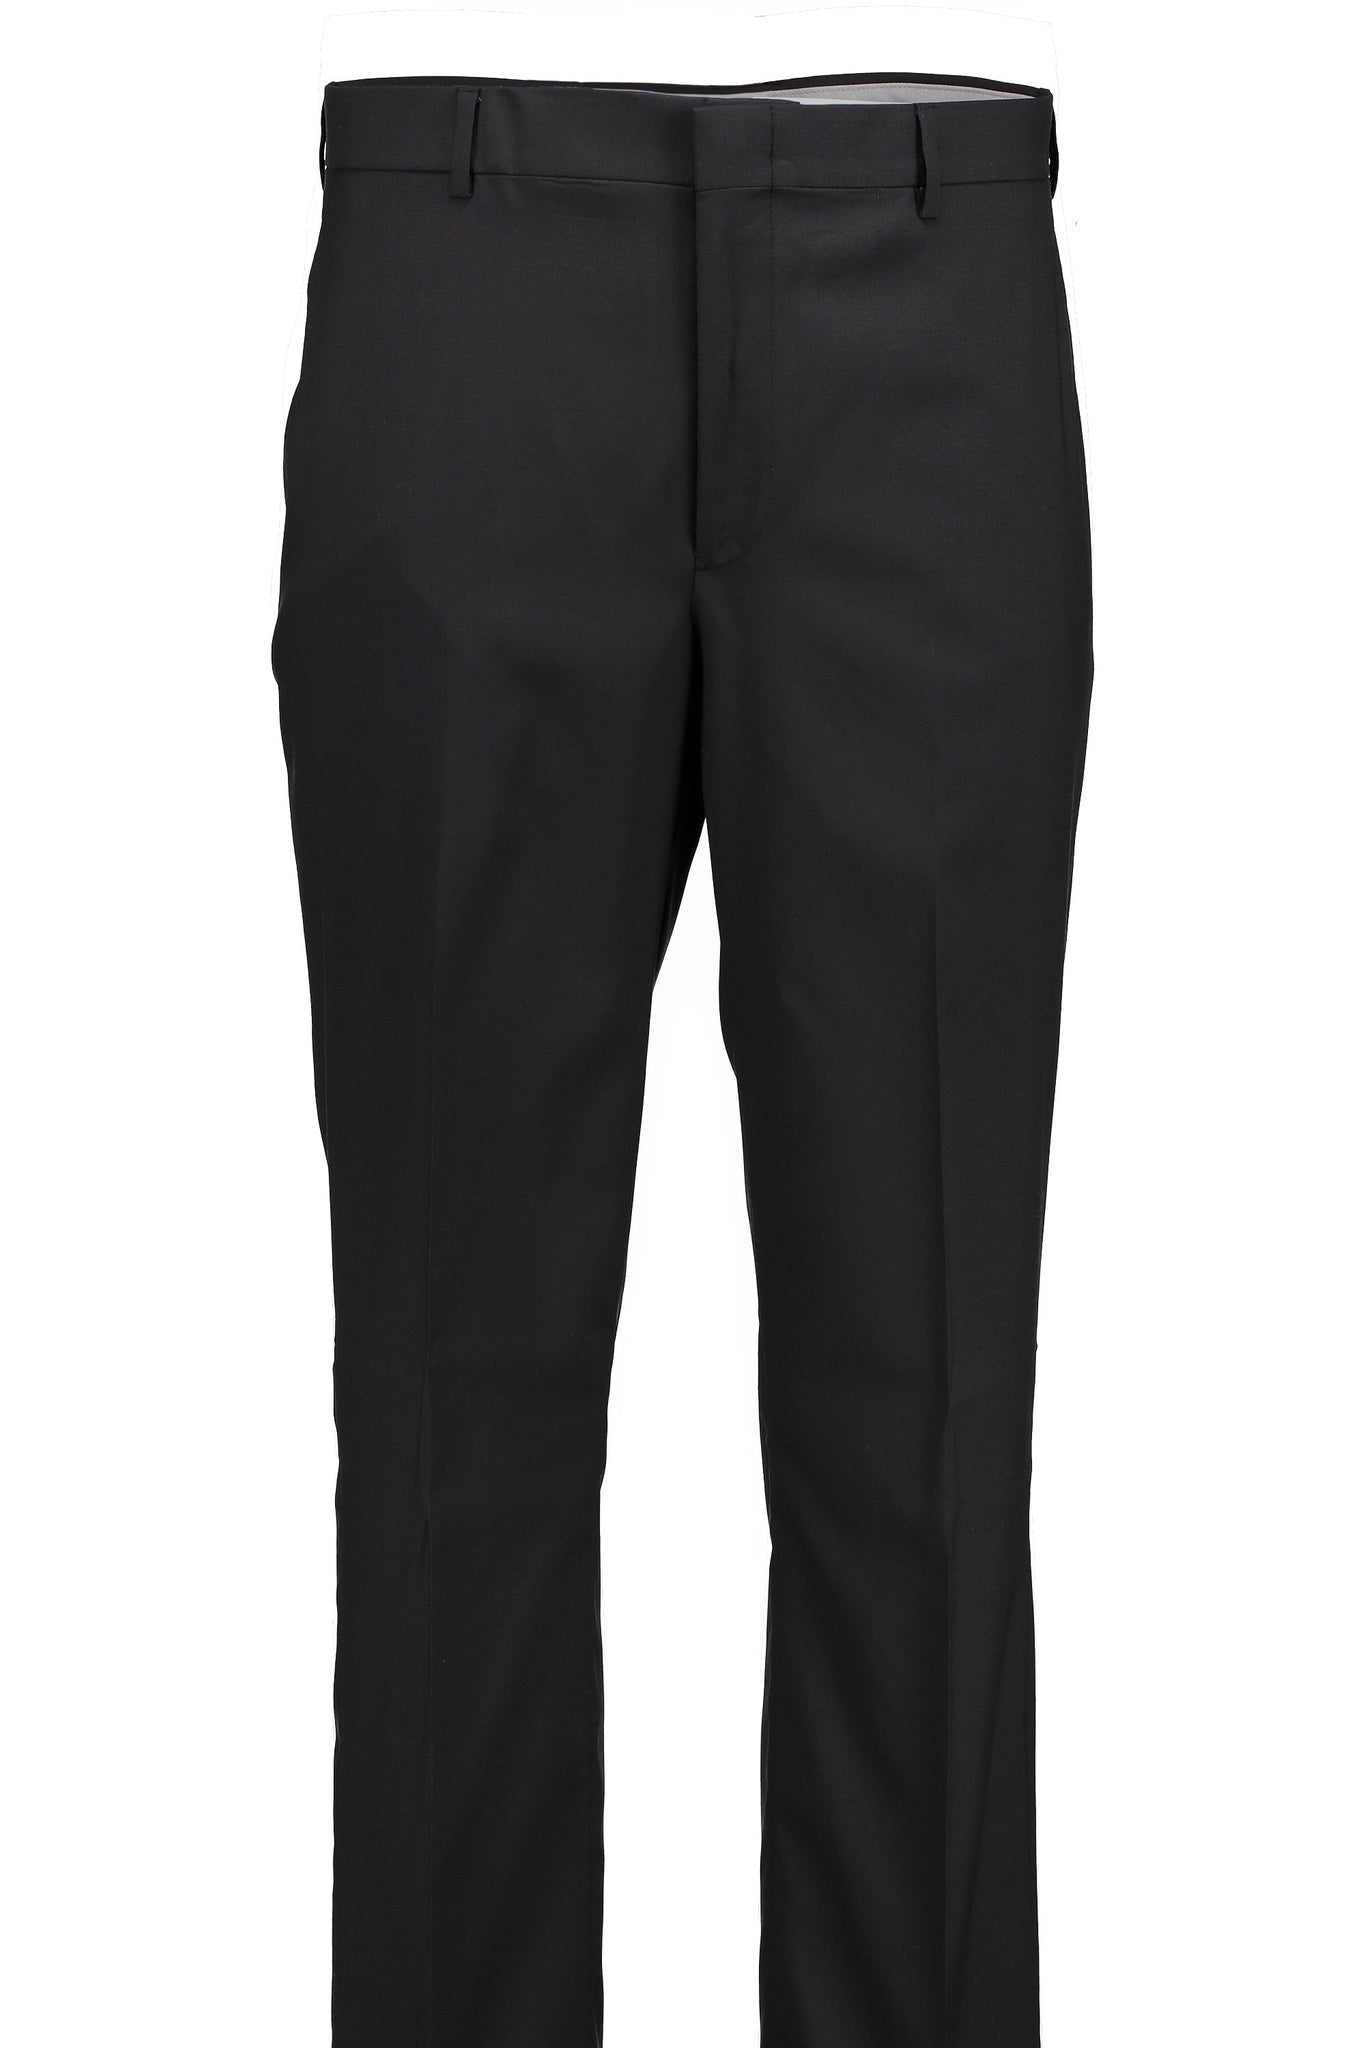 Men's Suit Separates Flat Front Pant Classic Cut - BLACK - 98/2 WOOL/L ...